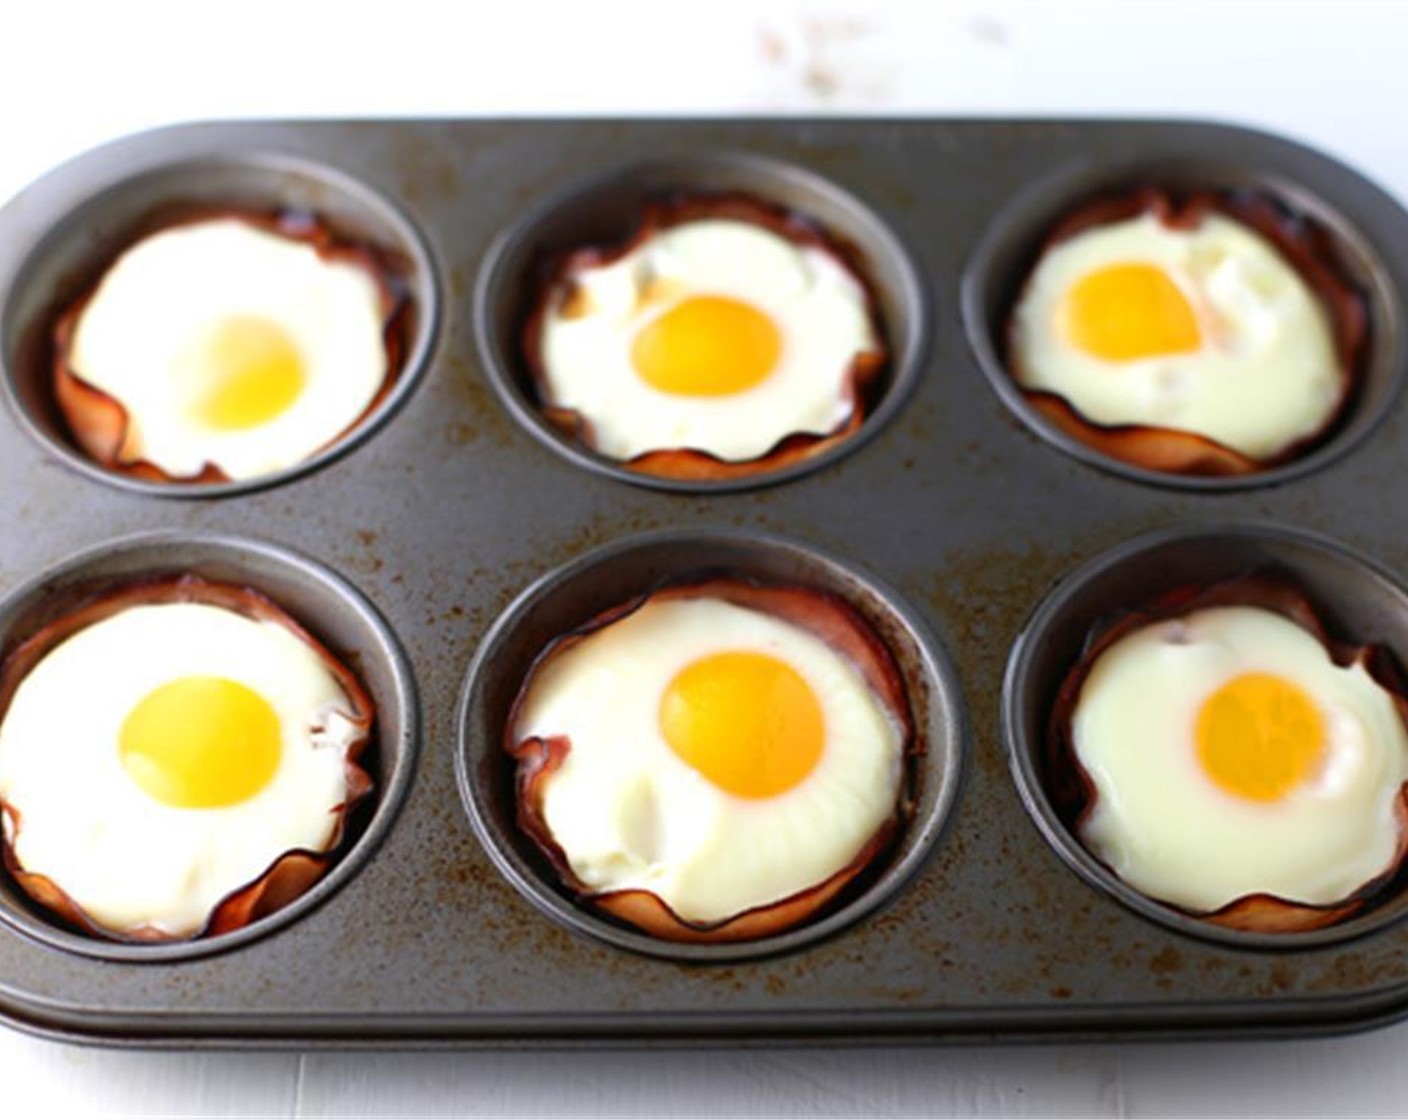 Schritt 3 10 bis 15 Minuten im Ofen bei 200 °C backen, bis die Eier je nach Wunsch weich, mittel oder hart sind. In 15 Minuten ist das Eigelb ganz durchgegart.